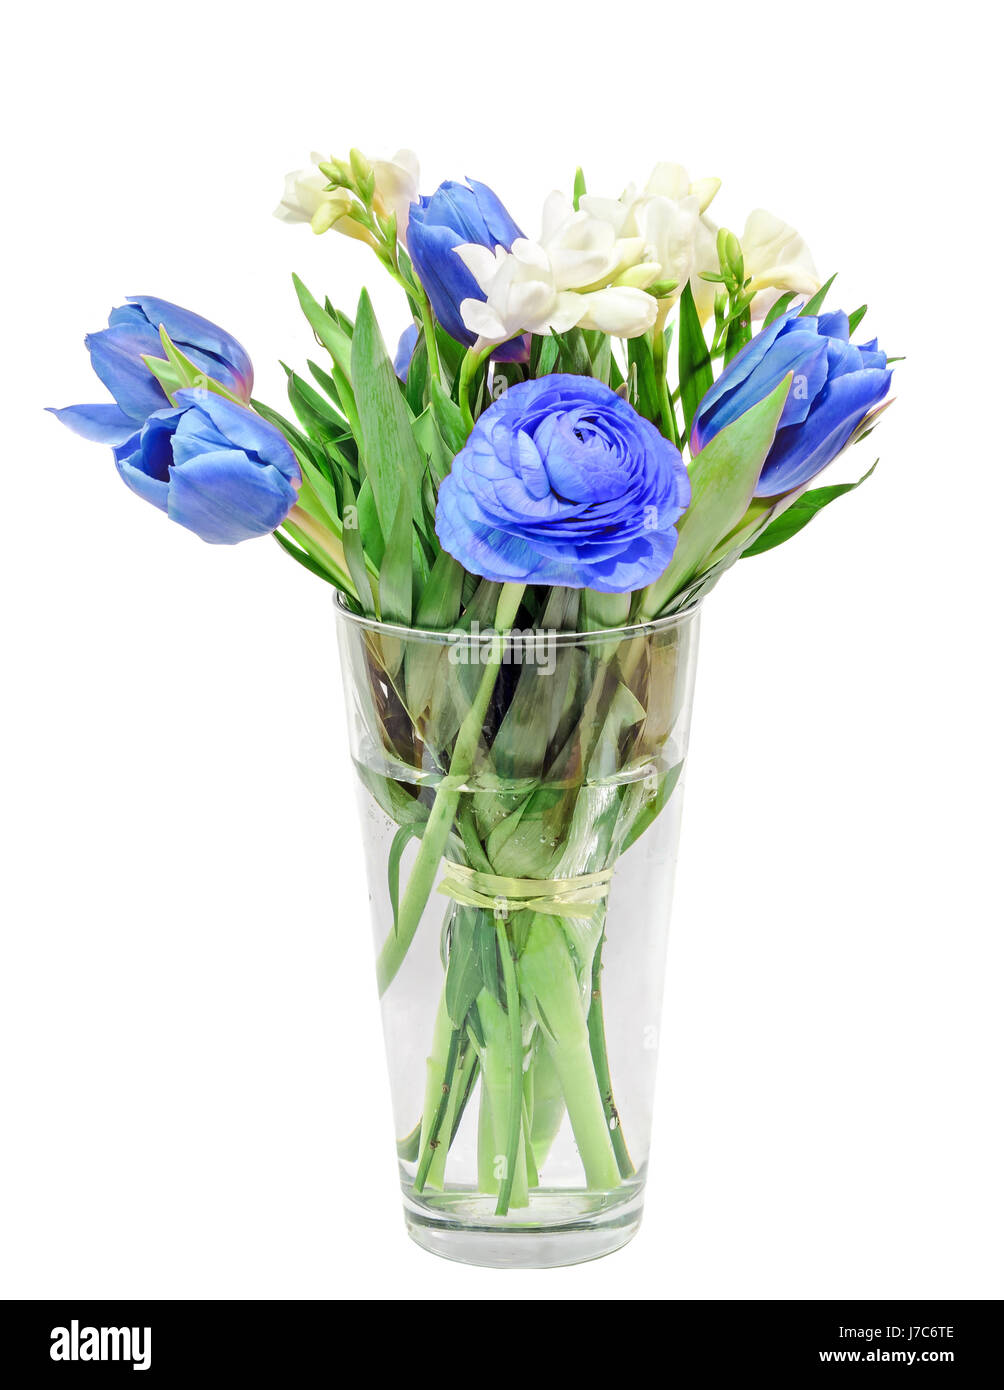 Tulipes bleu, blanc freesia, renoncules fleurs, bouquet, bouquet de fleurs dans un vase transparent rempli d'eau, isolé, fond blanc. Banque D'Images